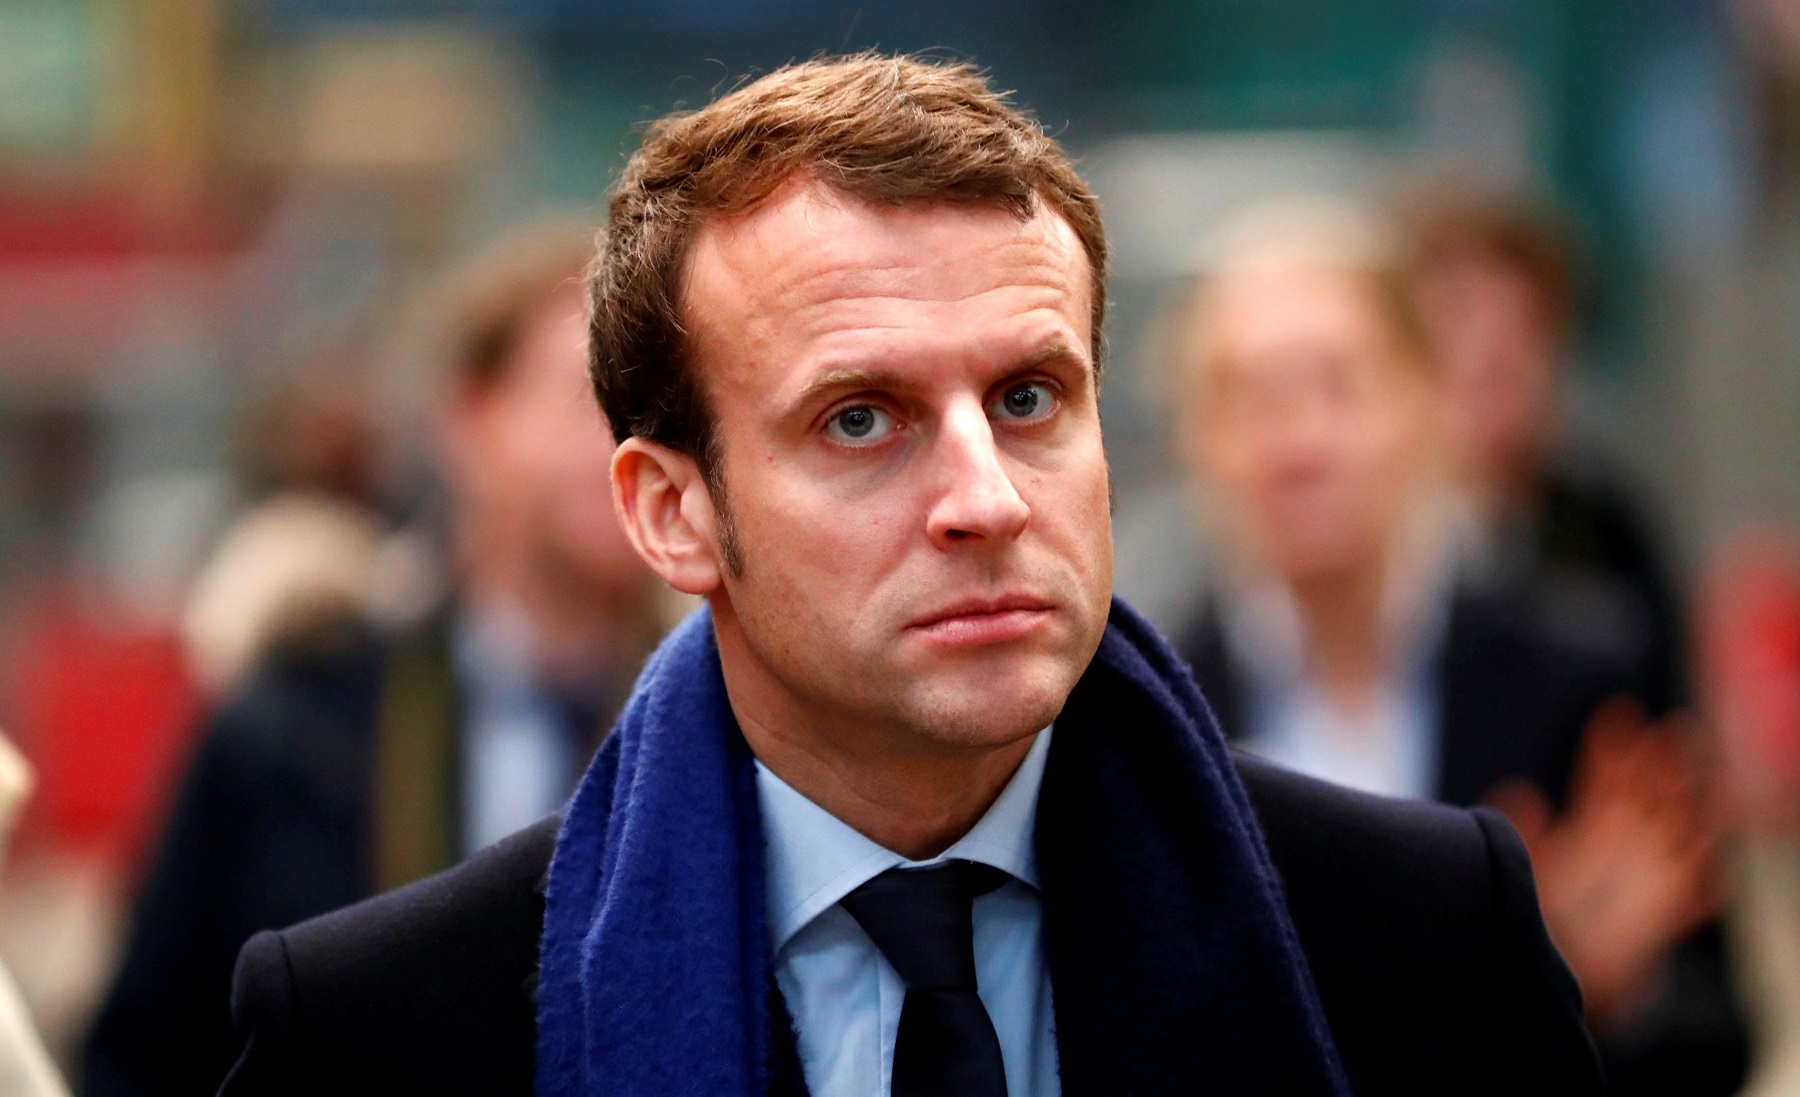 Emmanuel  Macron'a suikast girişimi önlendi